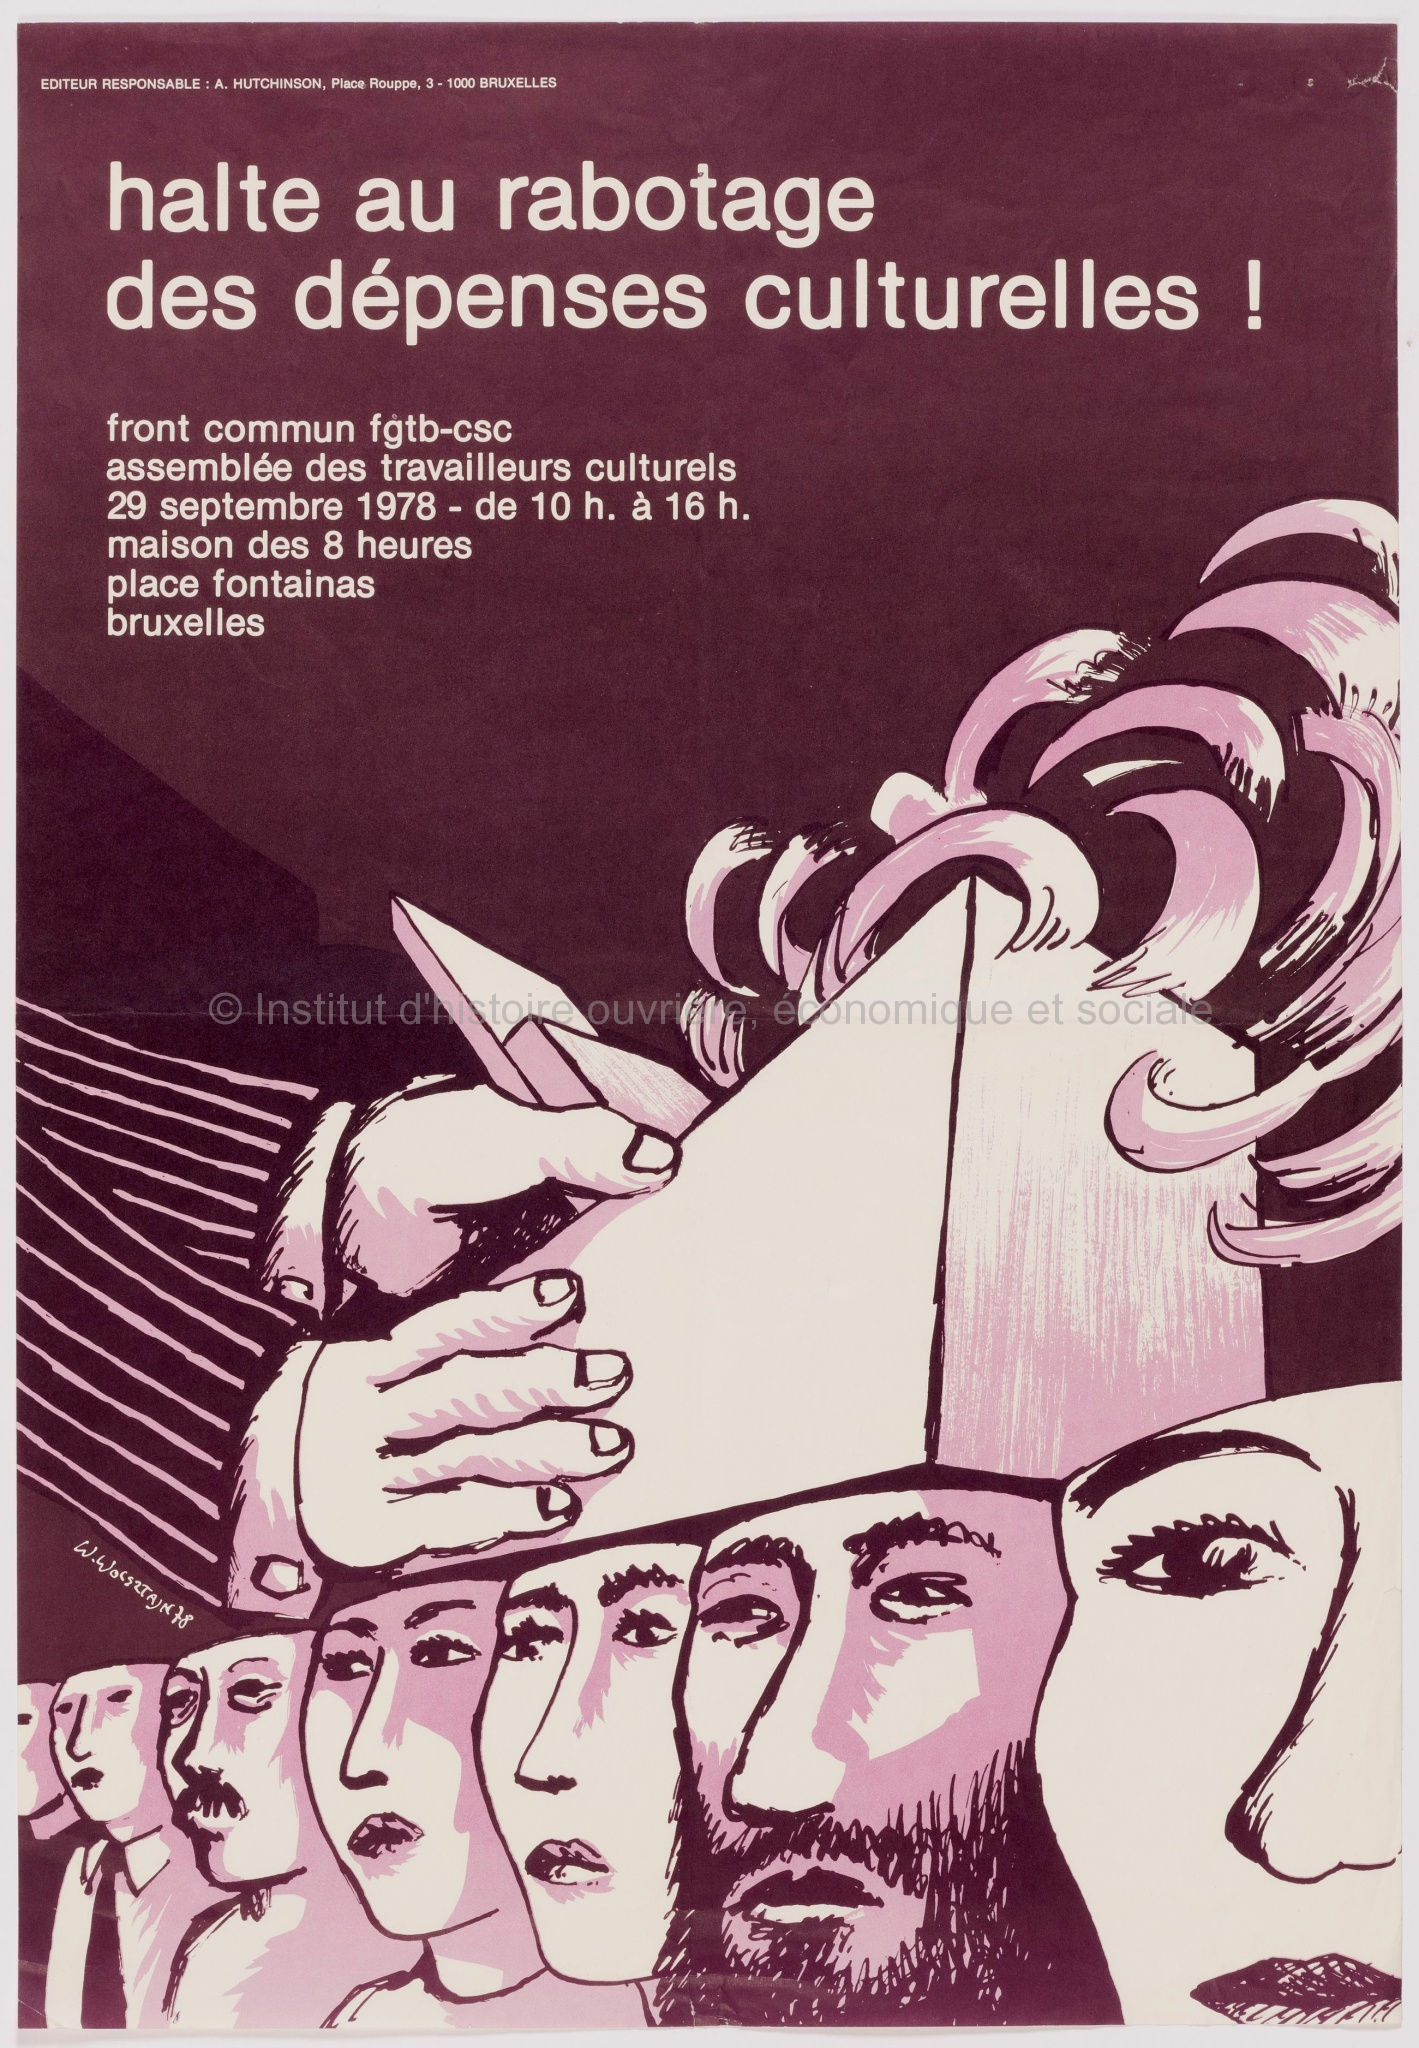 Halte au rabotage des dépenses culturelles ! : front commun FGTB-CSC, assemblée des travailleurs culturelles, 29 septembre 1978